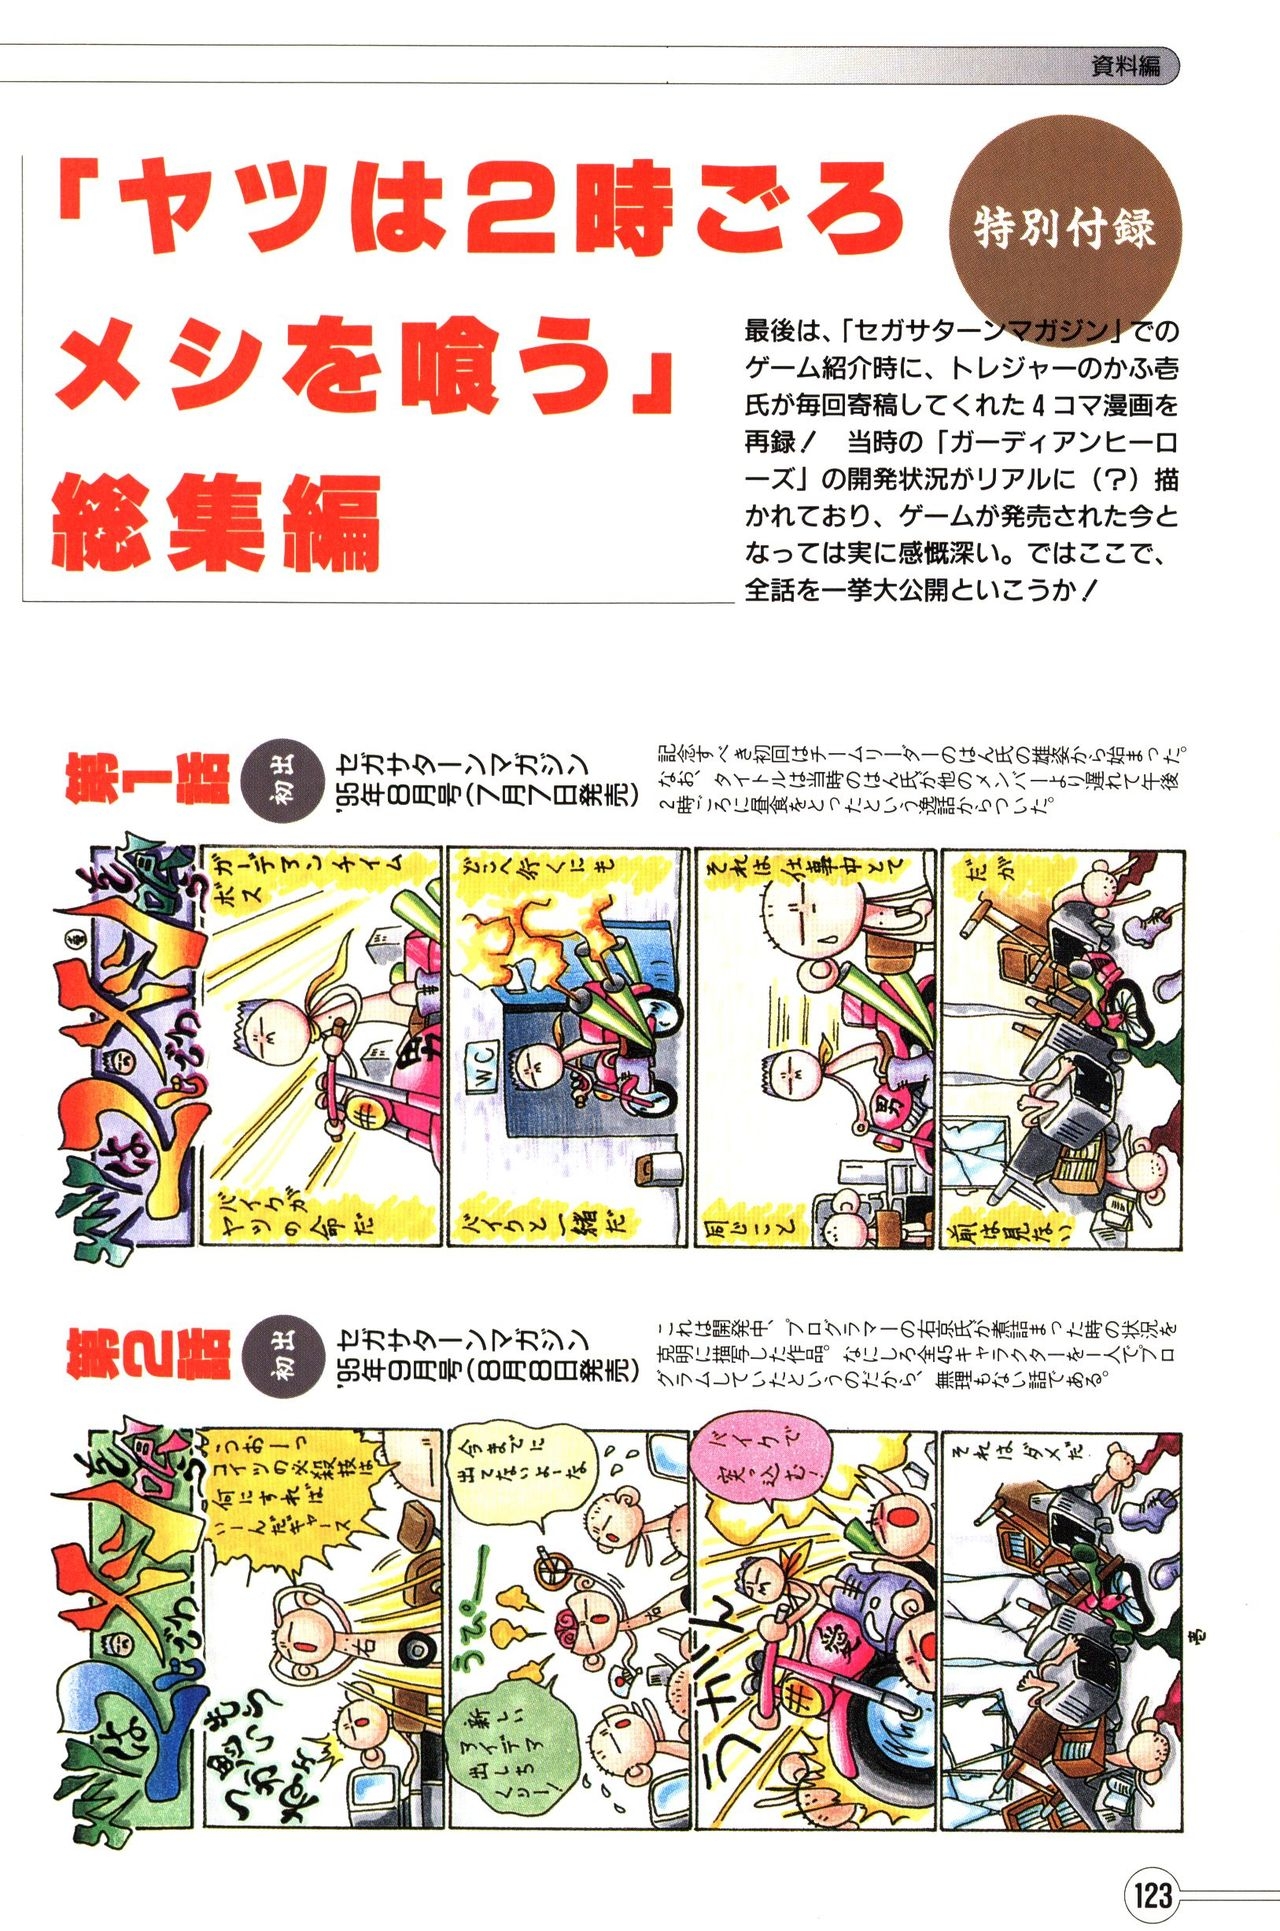 Guardian Heroes Perfect Guide (Sega Saturn magazine books) 125